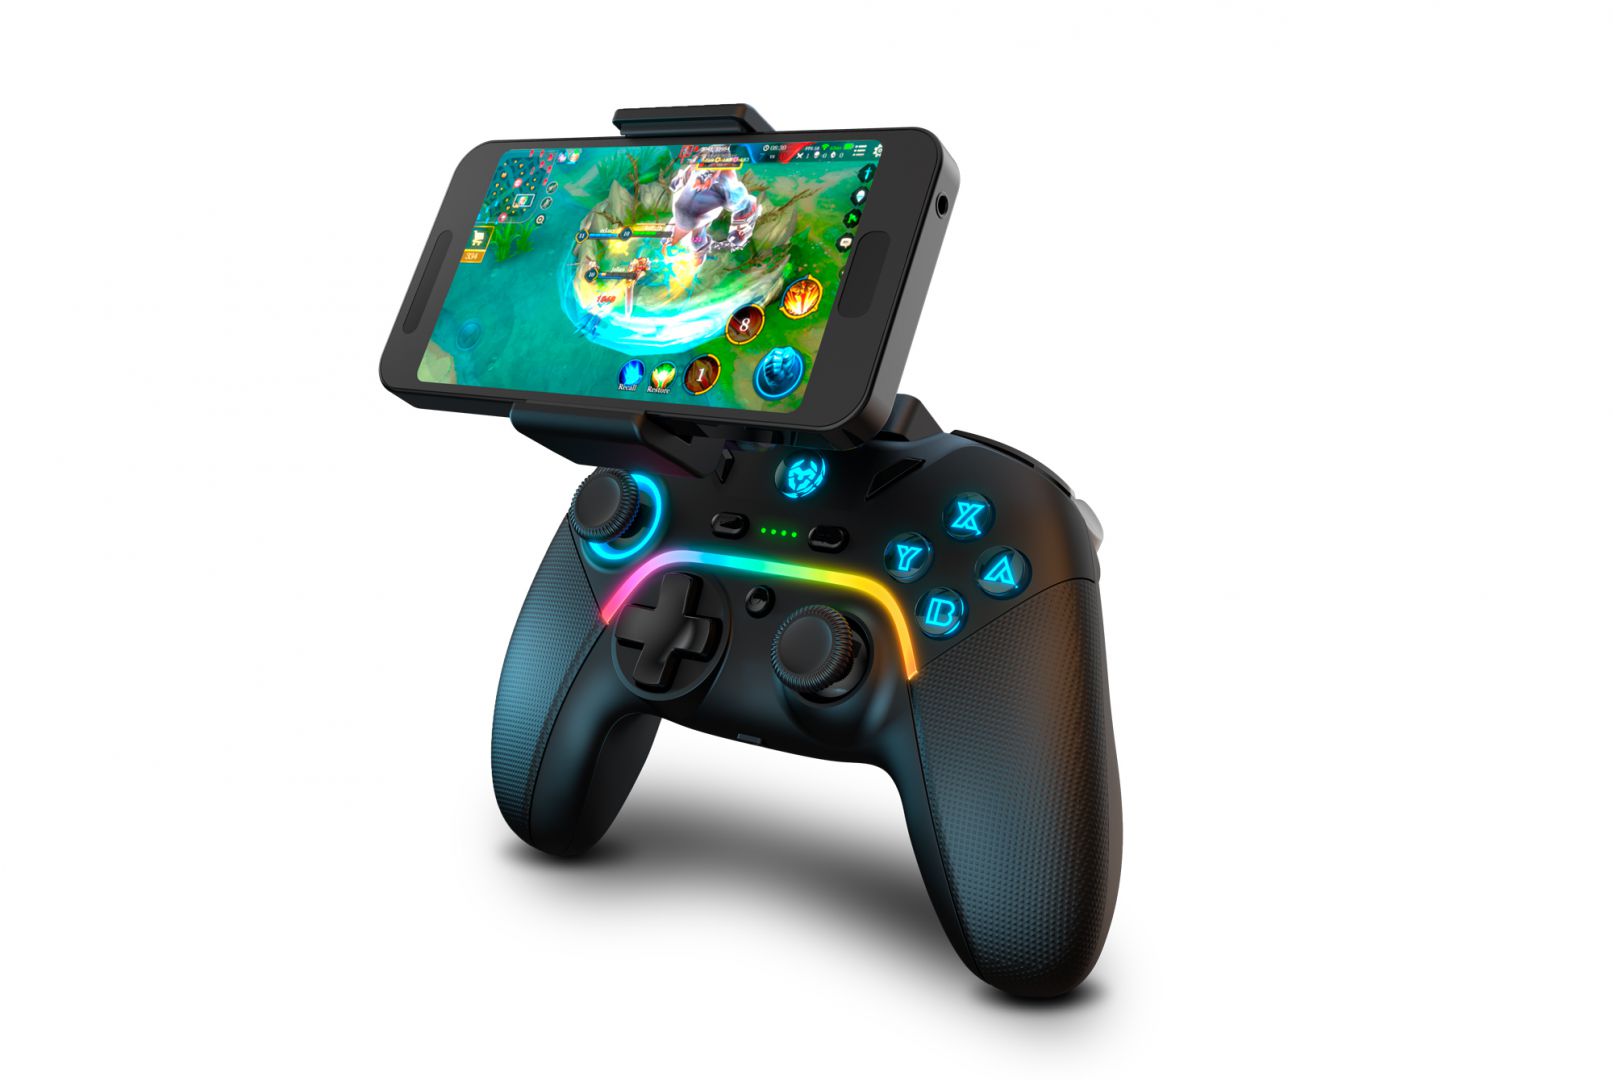 Así es el nuevo Krom Kayros, un mando inalámbrico RGB con soporte para móvil integrado - Seguro que buscas alguna opción económica para jugar a Xbox Cloud Gaming. El Krom Kayros podría ser tu mejor baza.